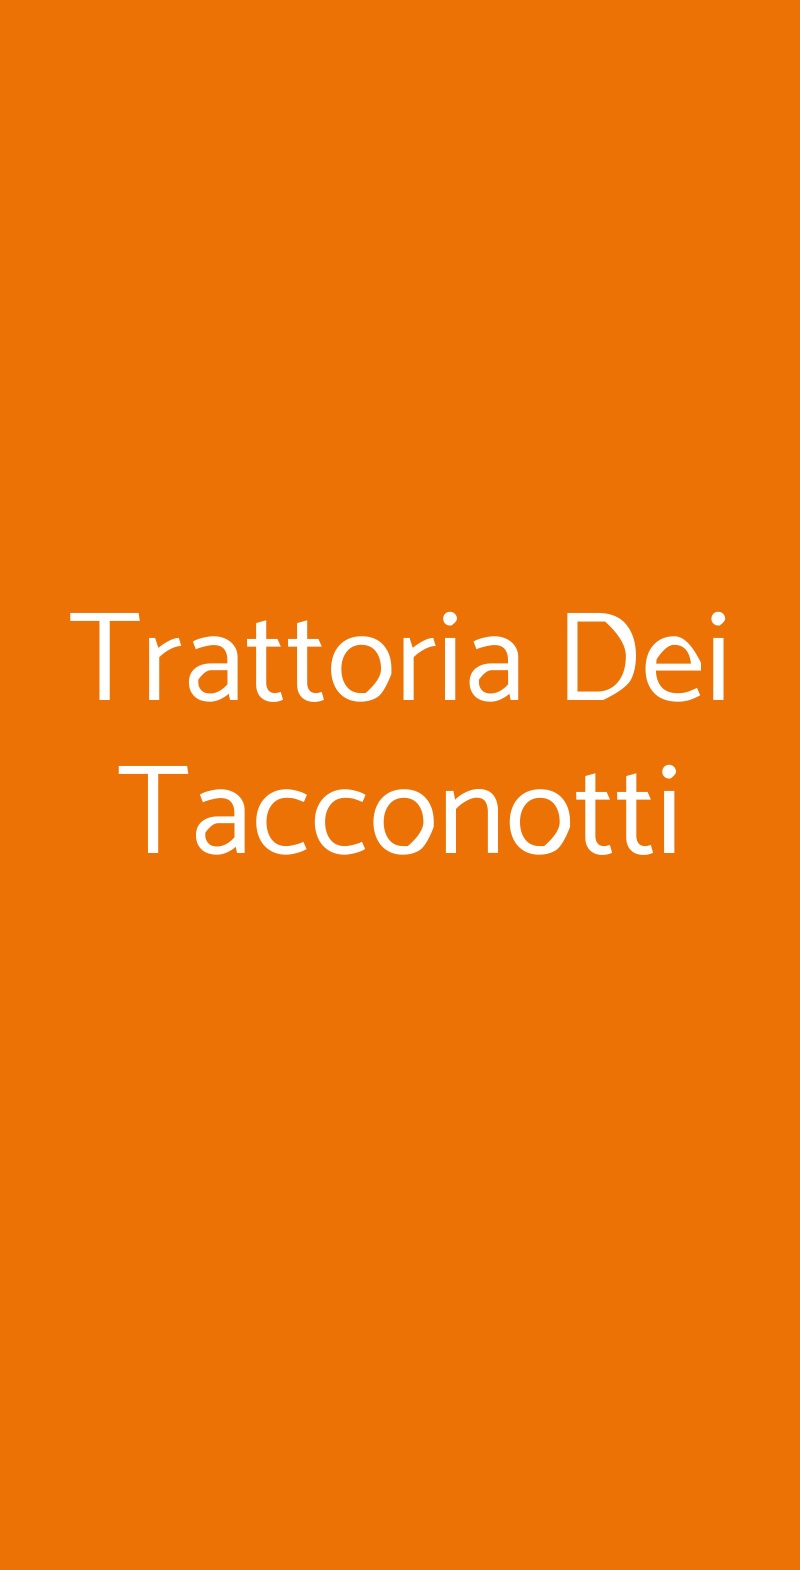 Trattoria Dei Tacconotti Frascaro menù 1 pagina